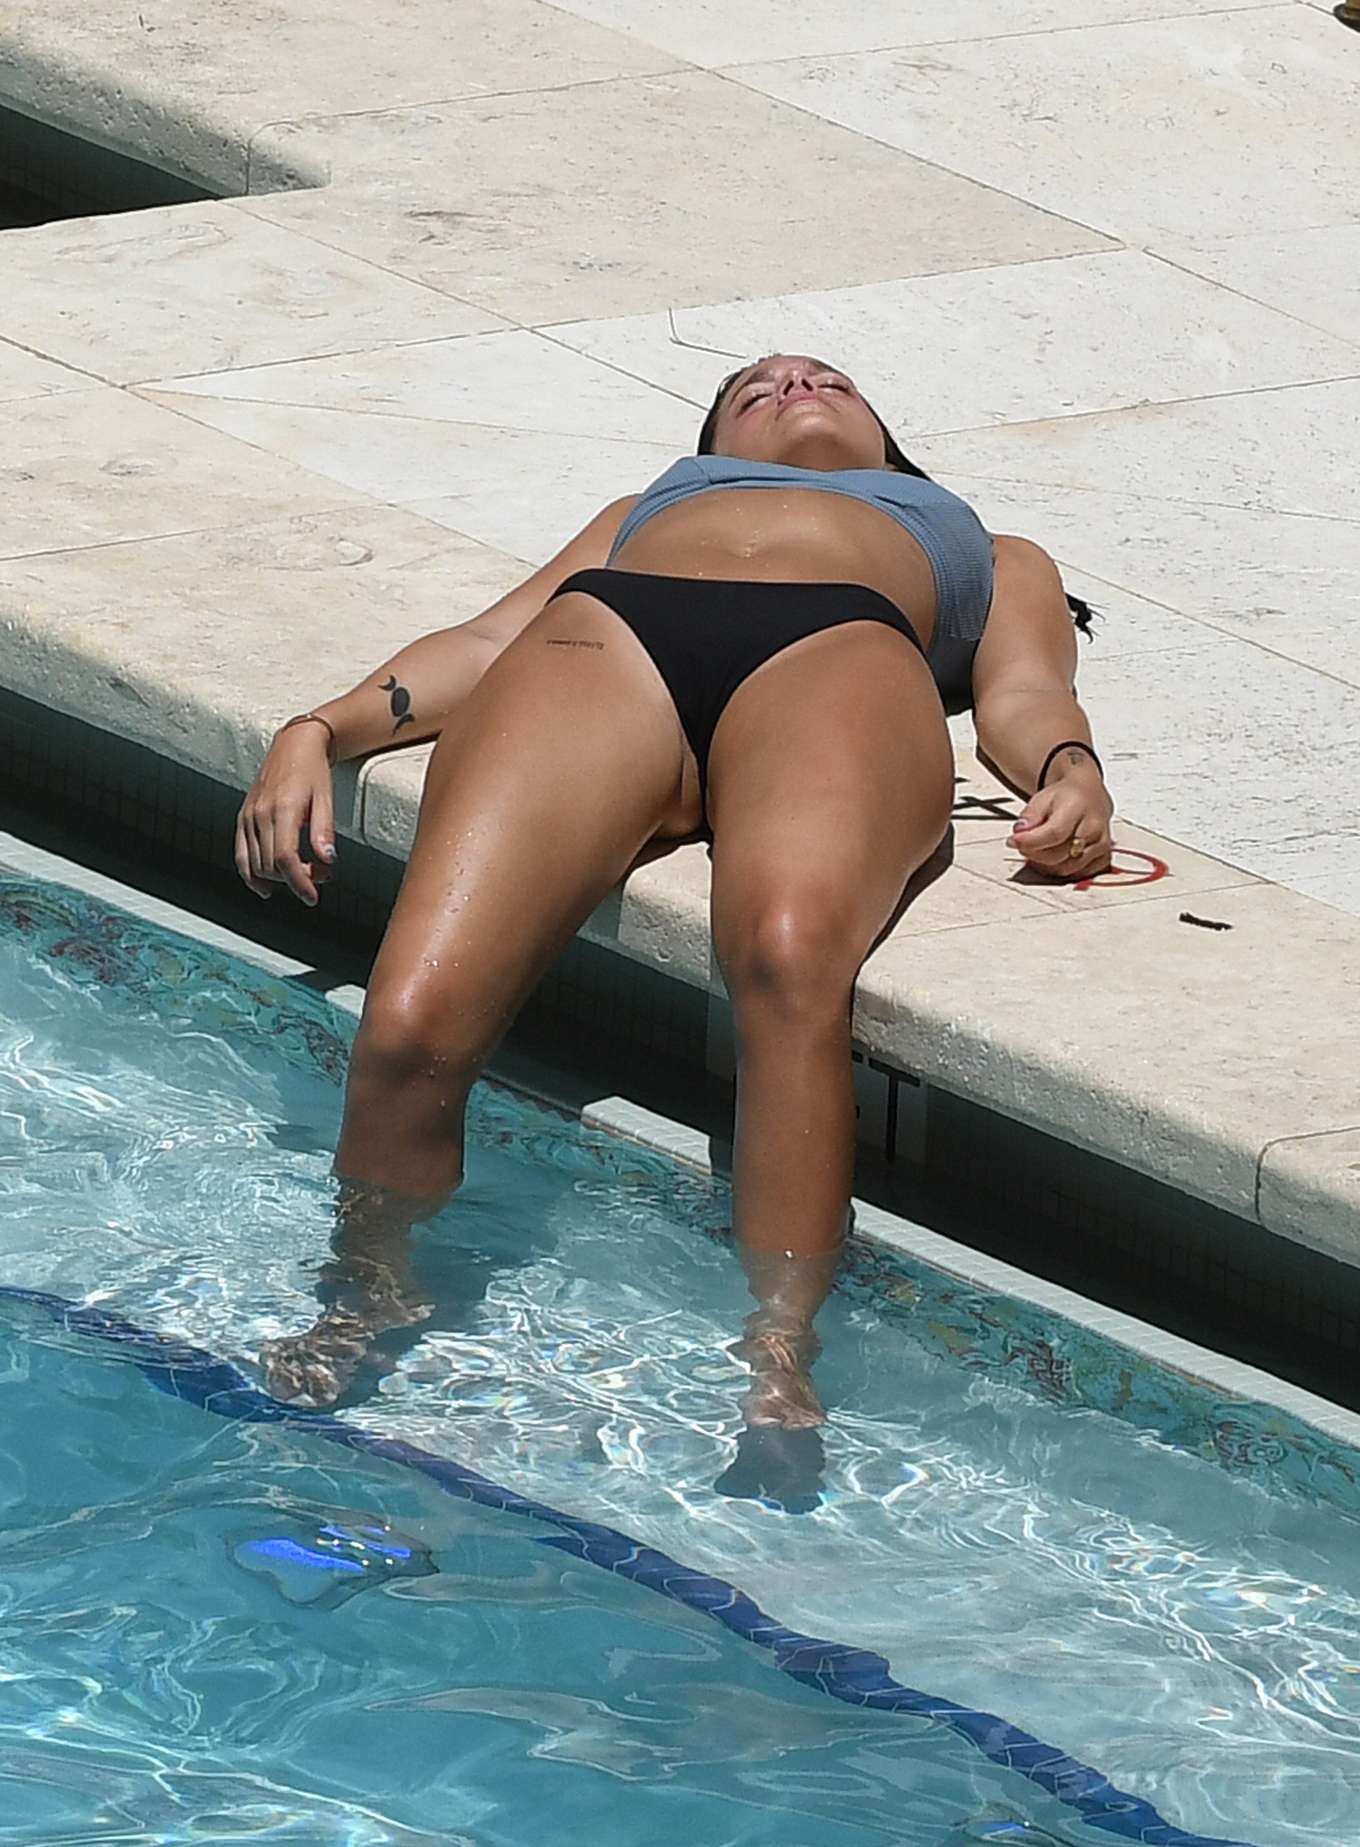 Oriana Sabatini in Bikini at the pool in Miami